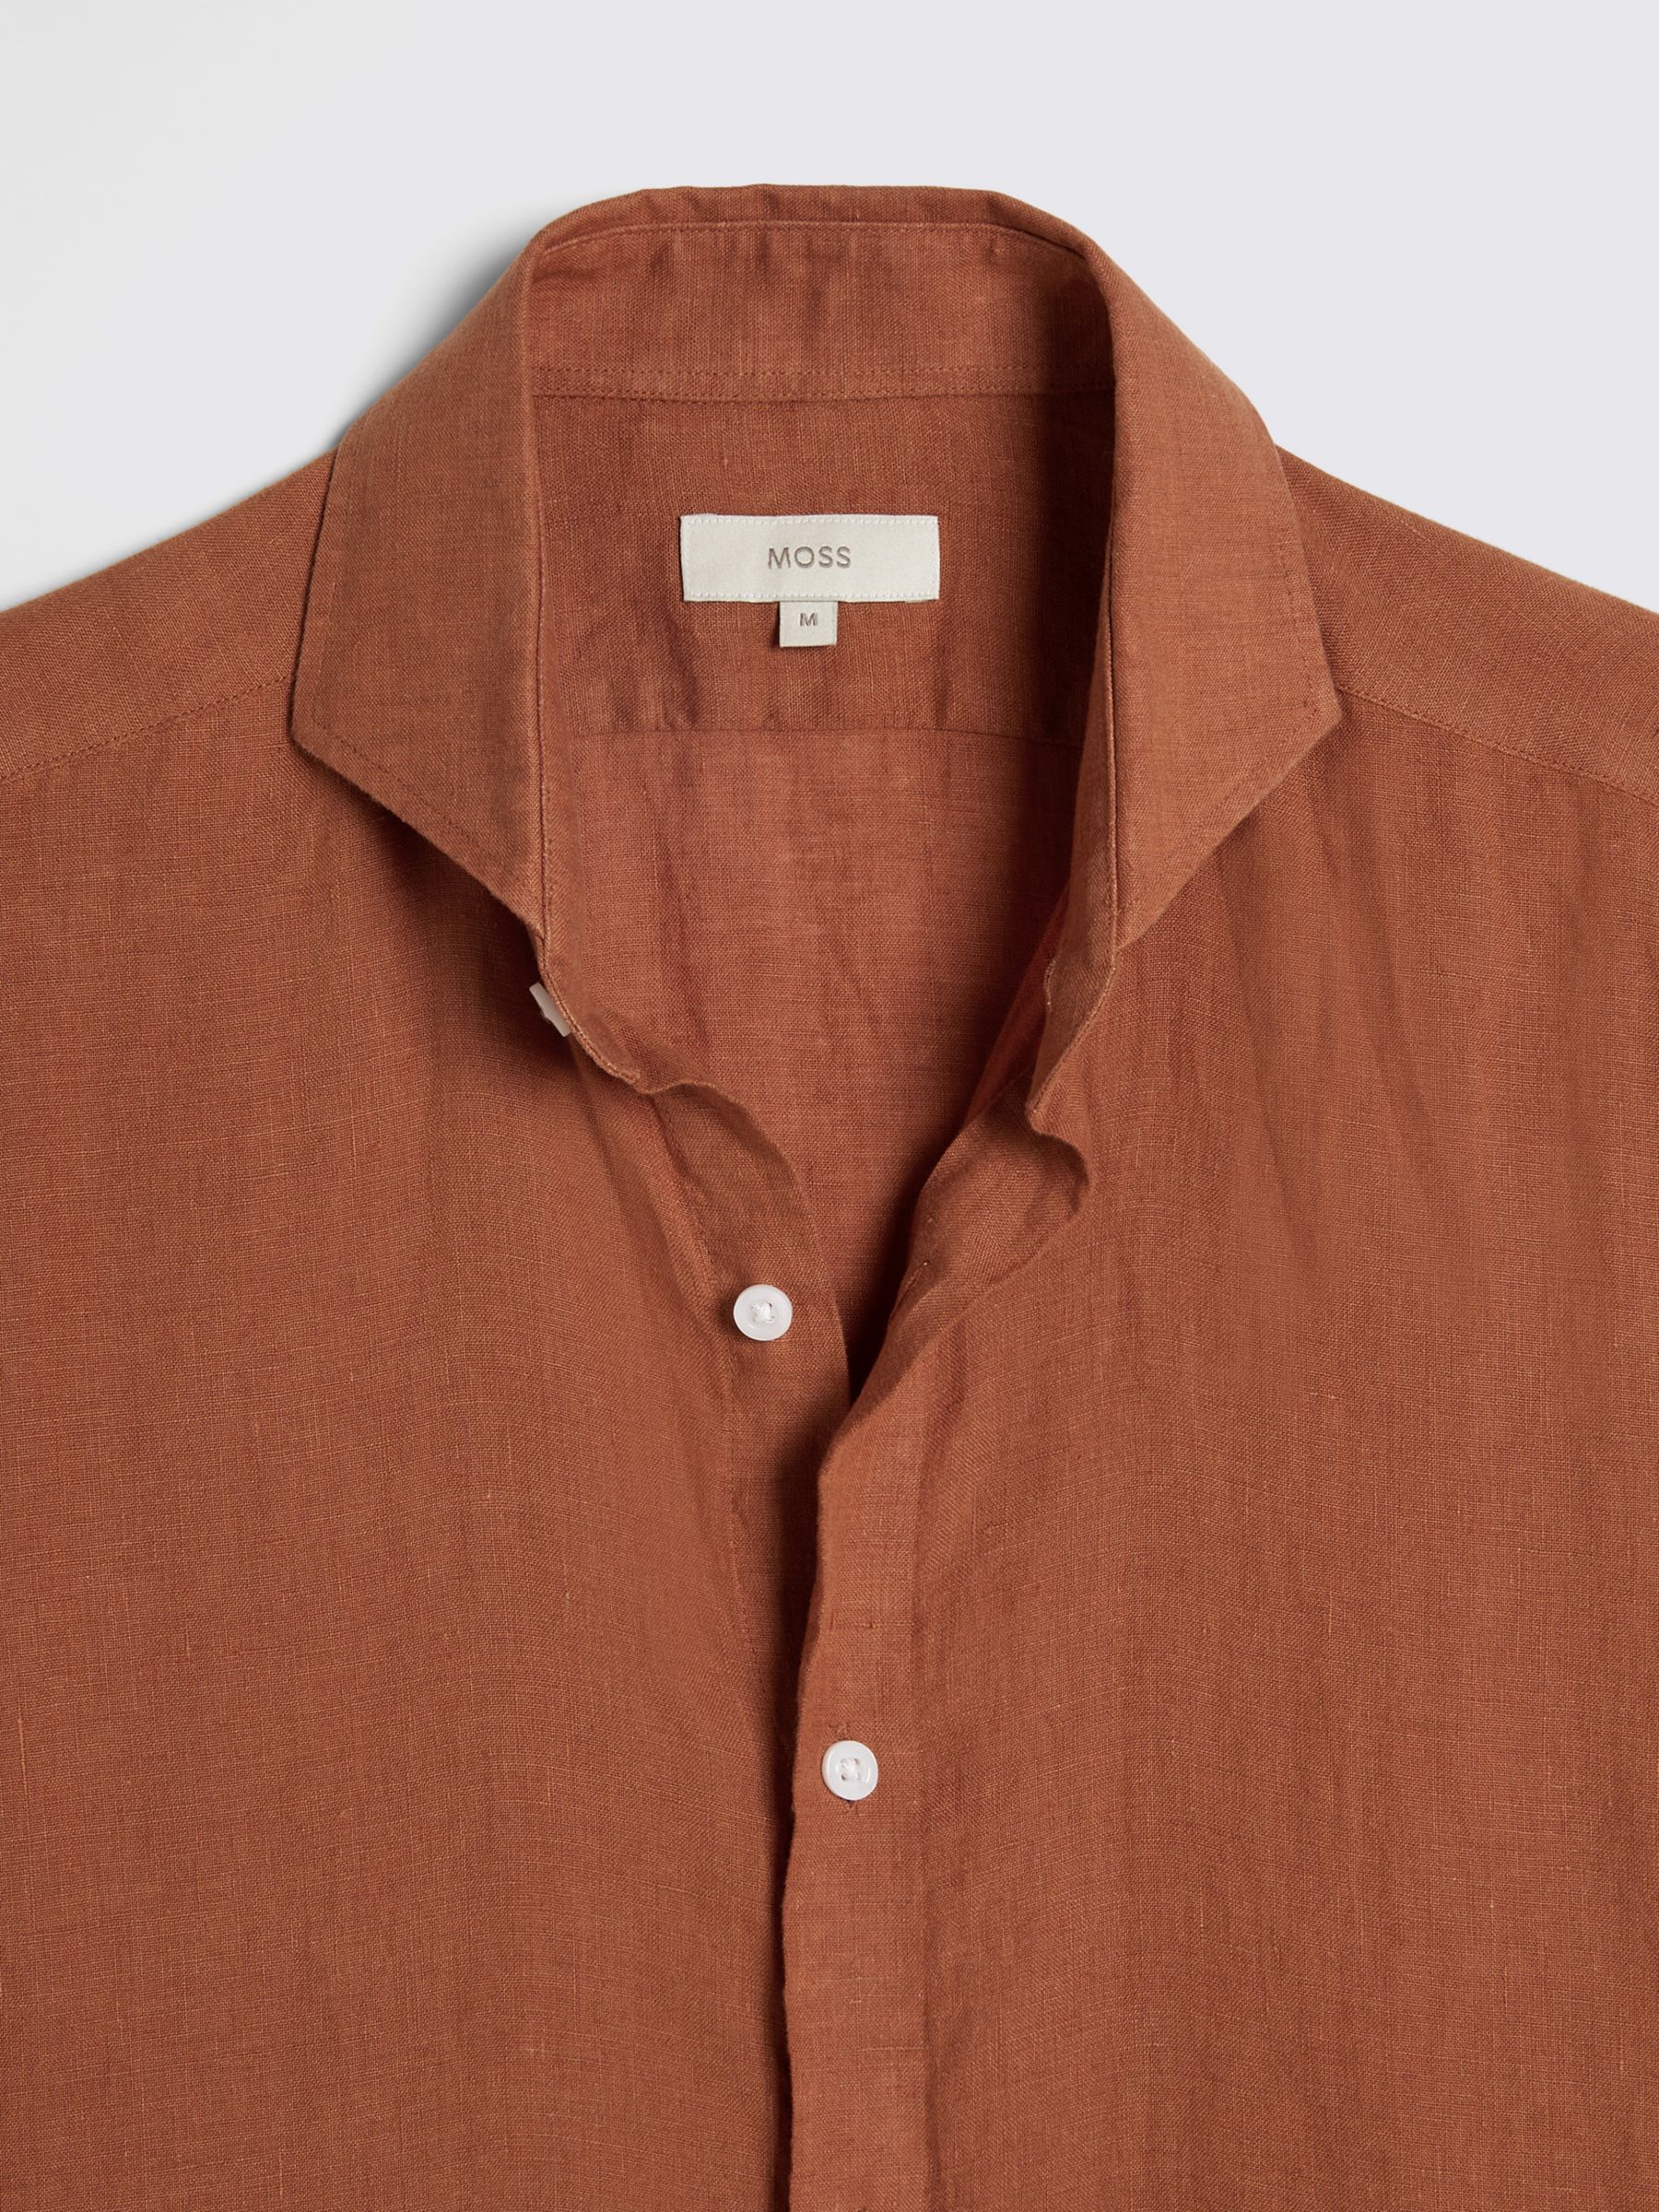 Moss Tailored Fit Linen Long Sleeve Shirt, Brown, S